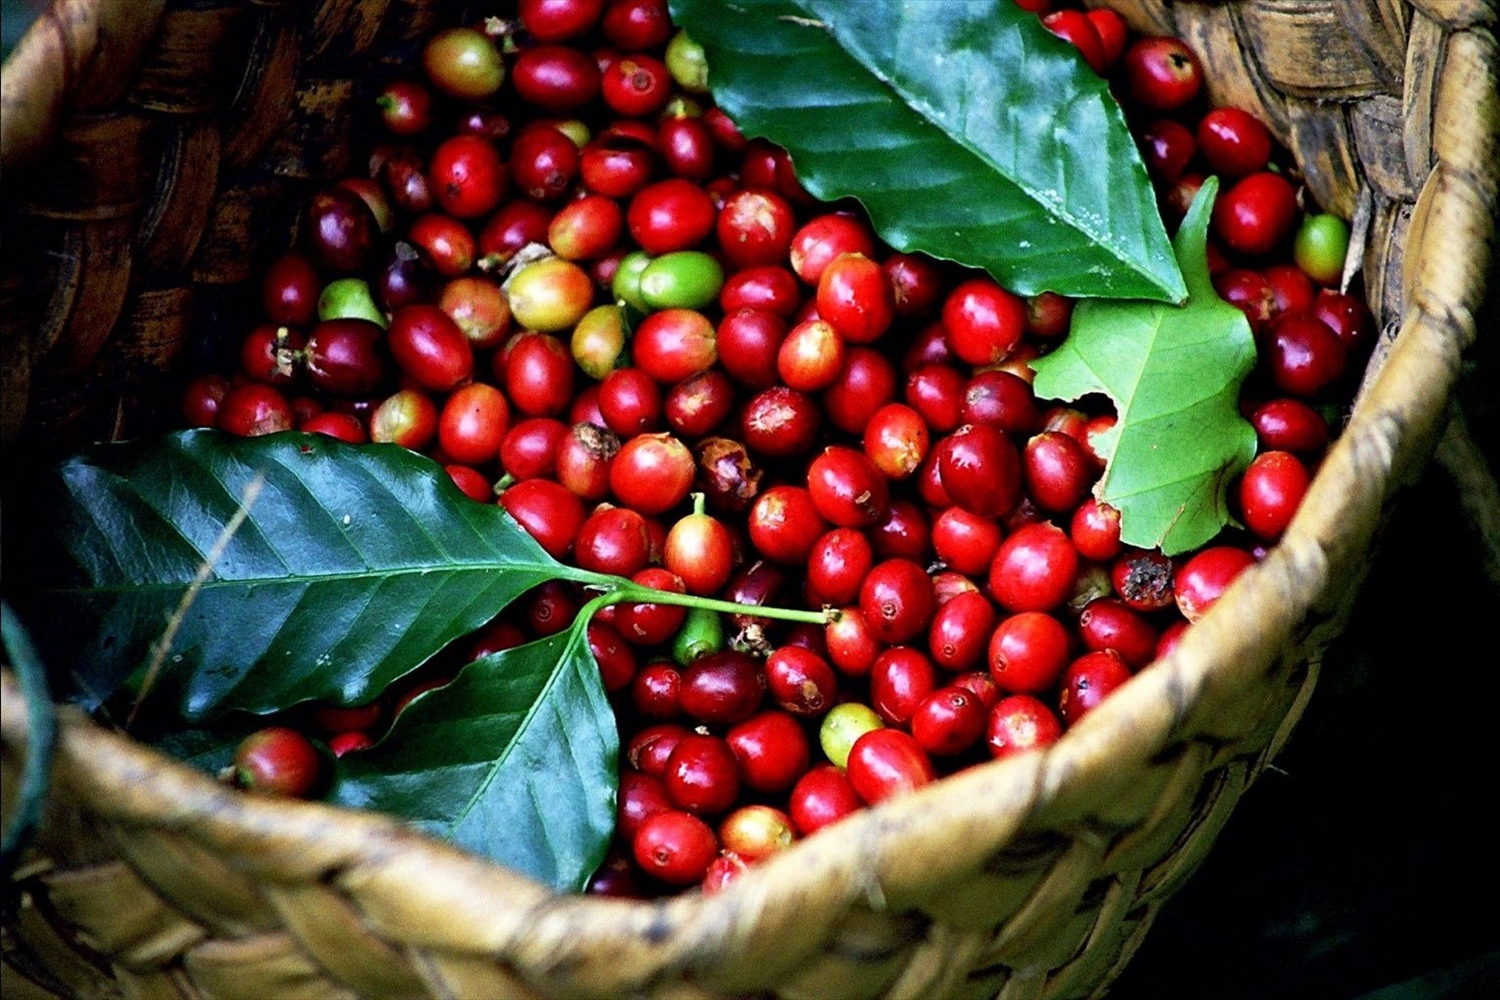 Tại các vùng trồng trọng điểm giá cà phê có xu hướng tăng nhẹ so với cùng thời điểm sáng hôm qua, giao dịch trong khoảng 36.100 - 37.000 đồng/kg. 